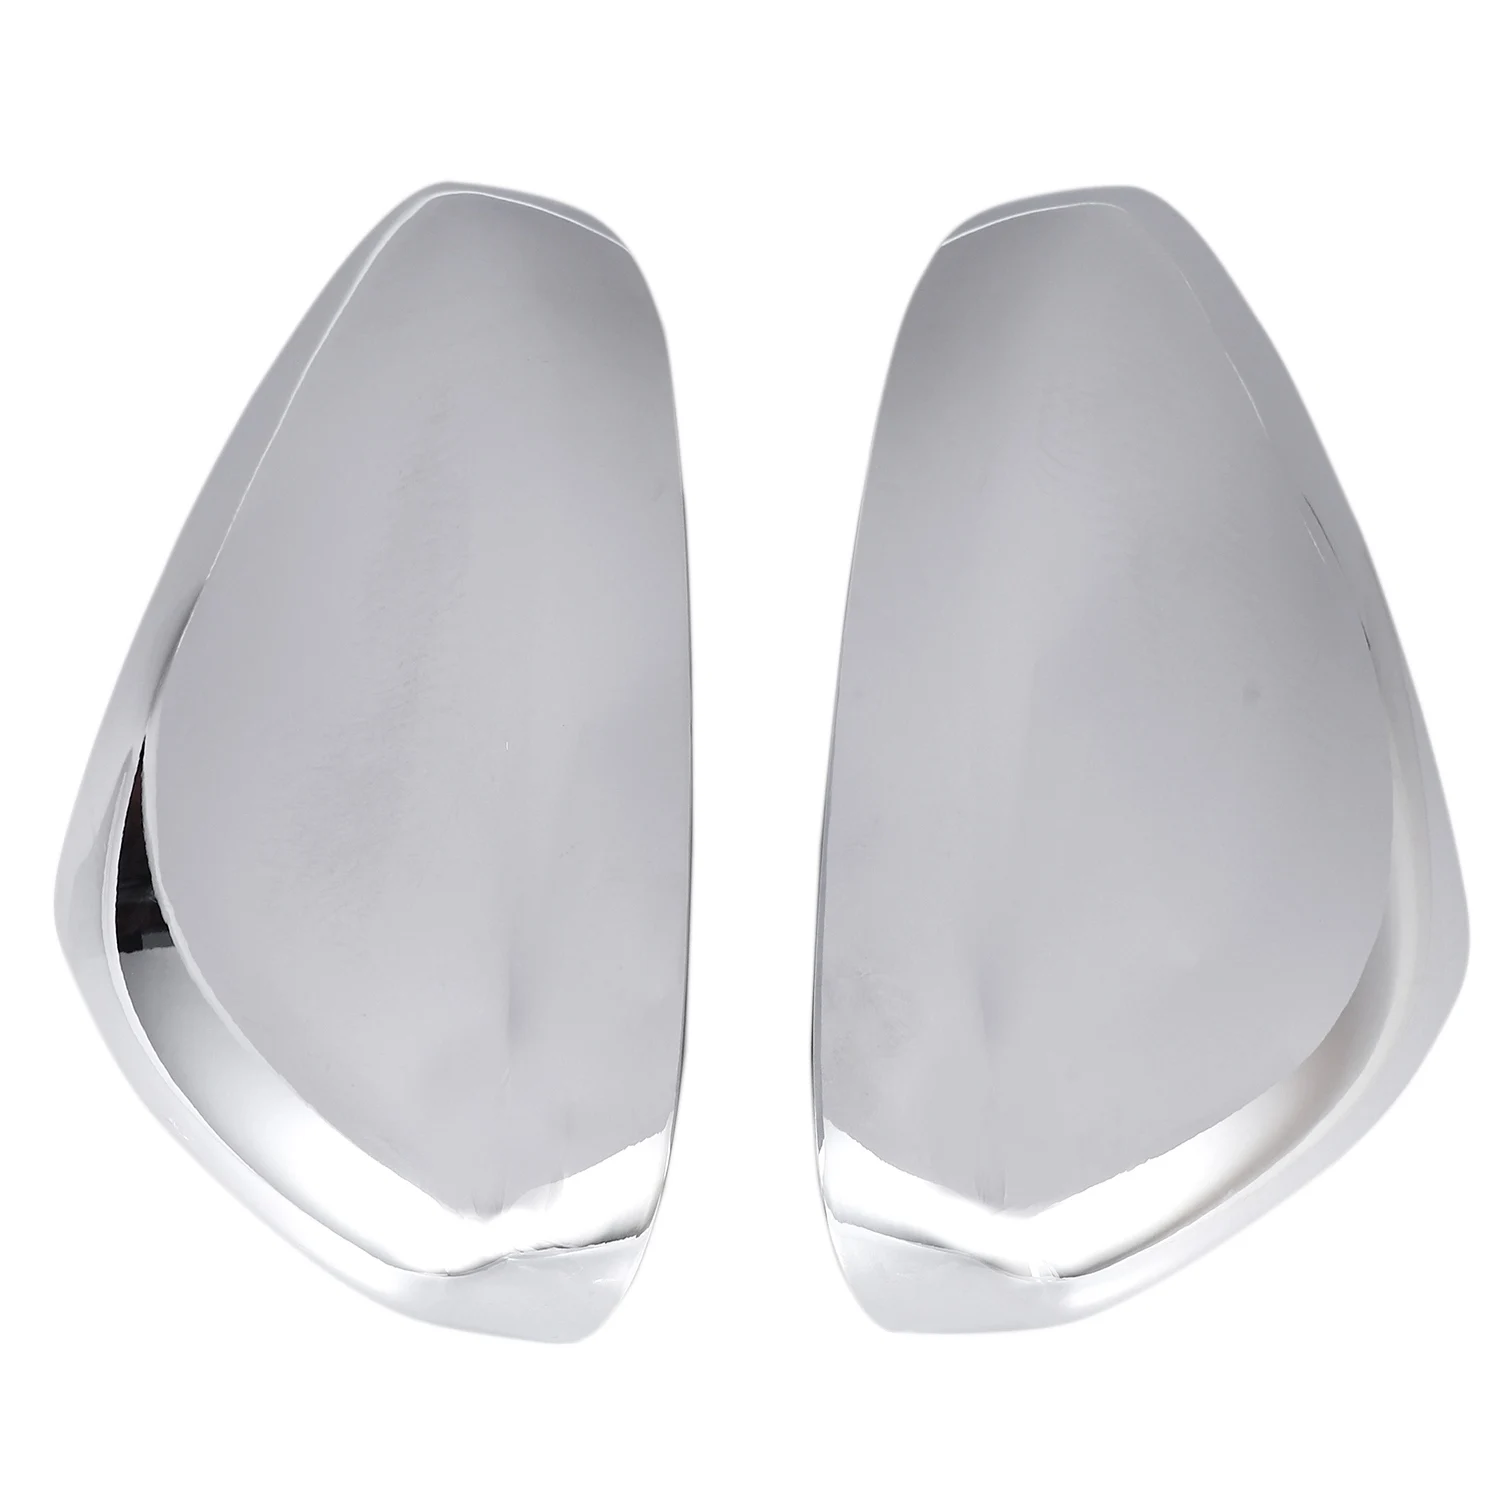 

Хромированные боковые зеркала для стайлинга автомобиля, глянцевые пары, Обложка, аксессуары для Peugeot 3008 5008 2017 2018, верхний слой заднего вида